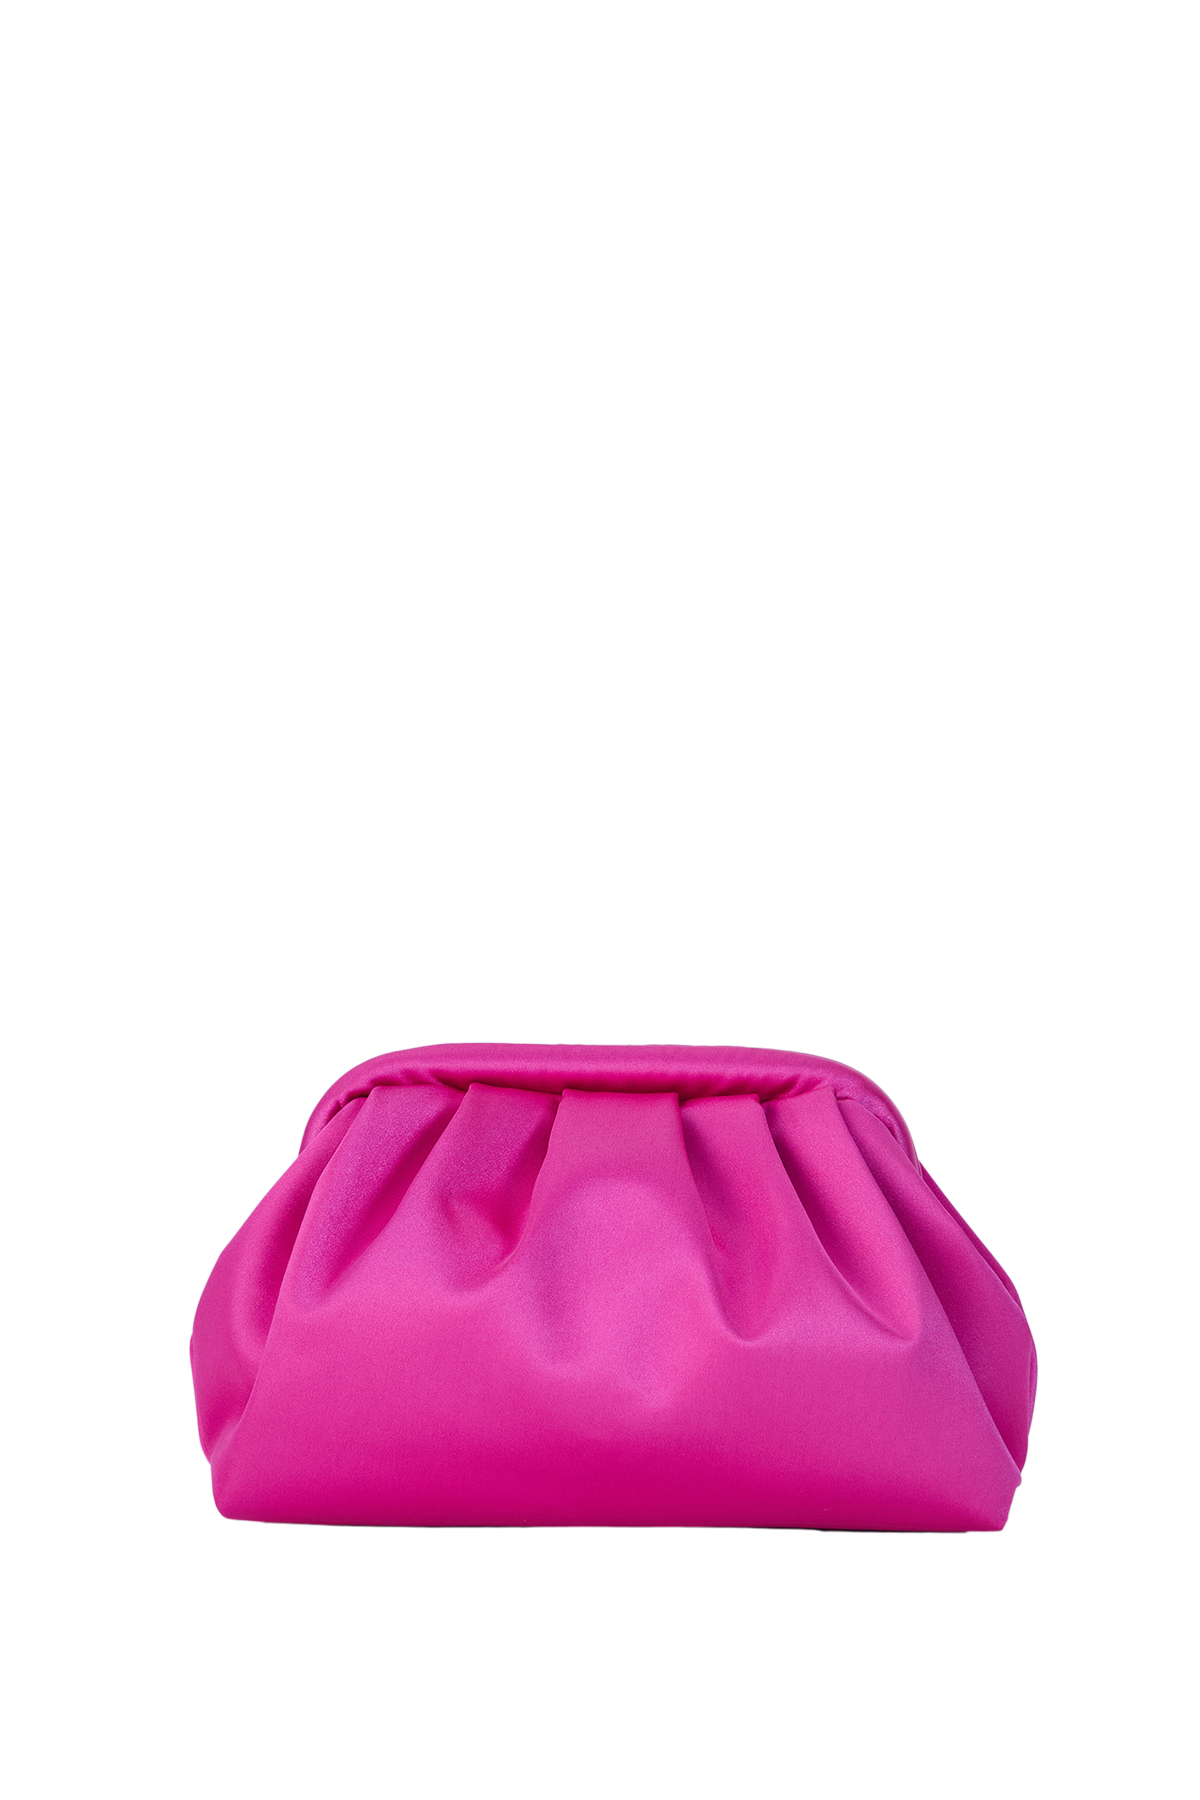 Beuteltasche aus Satin – Fuchsia Pink